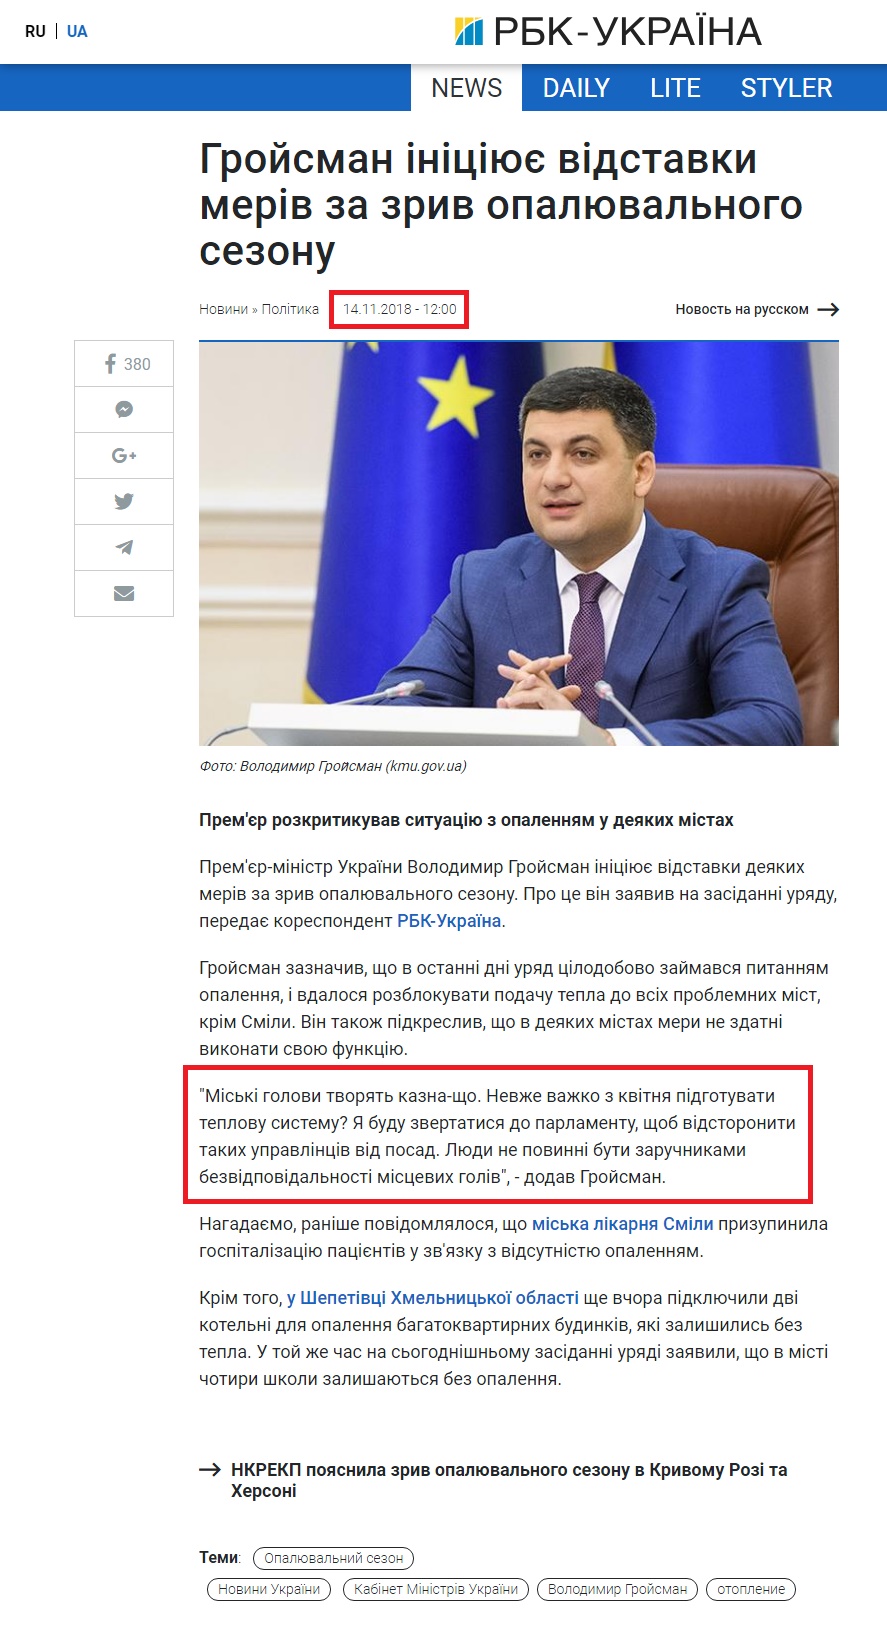 https://www.rbc.ua/ukr/news/groysman-initsiiruet-otstavki-merov-sryv-1542189586.html